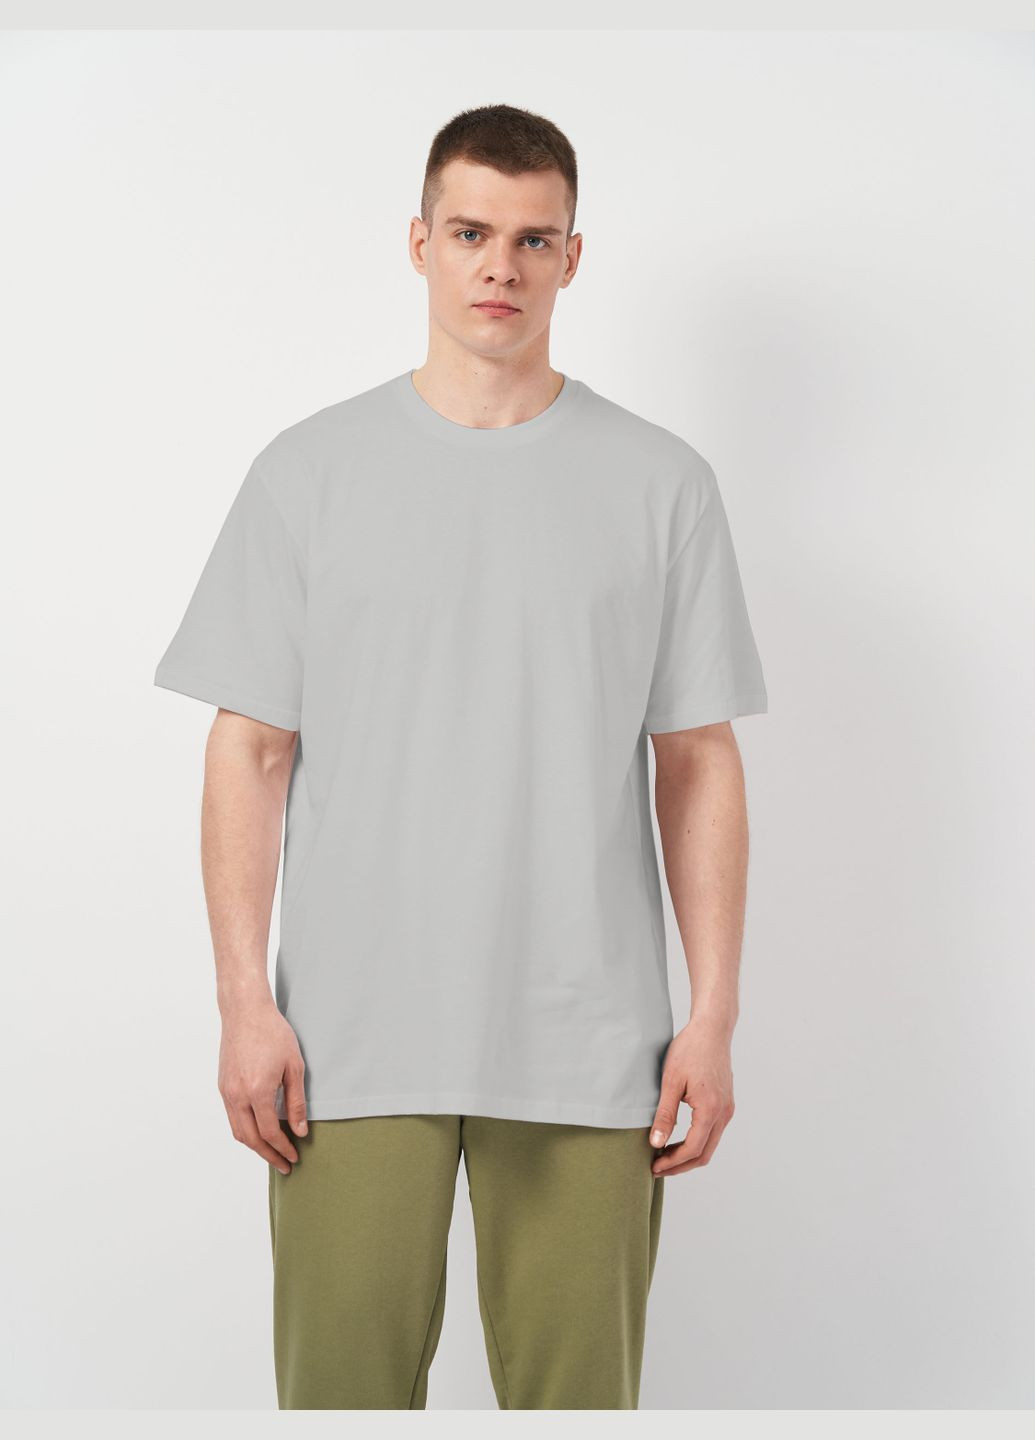 Светло-серая футболка для мужчин базовая с коротким рукавом Роза